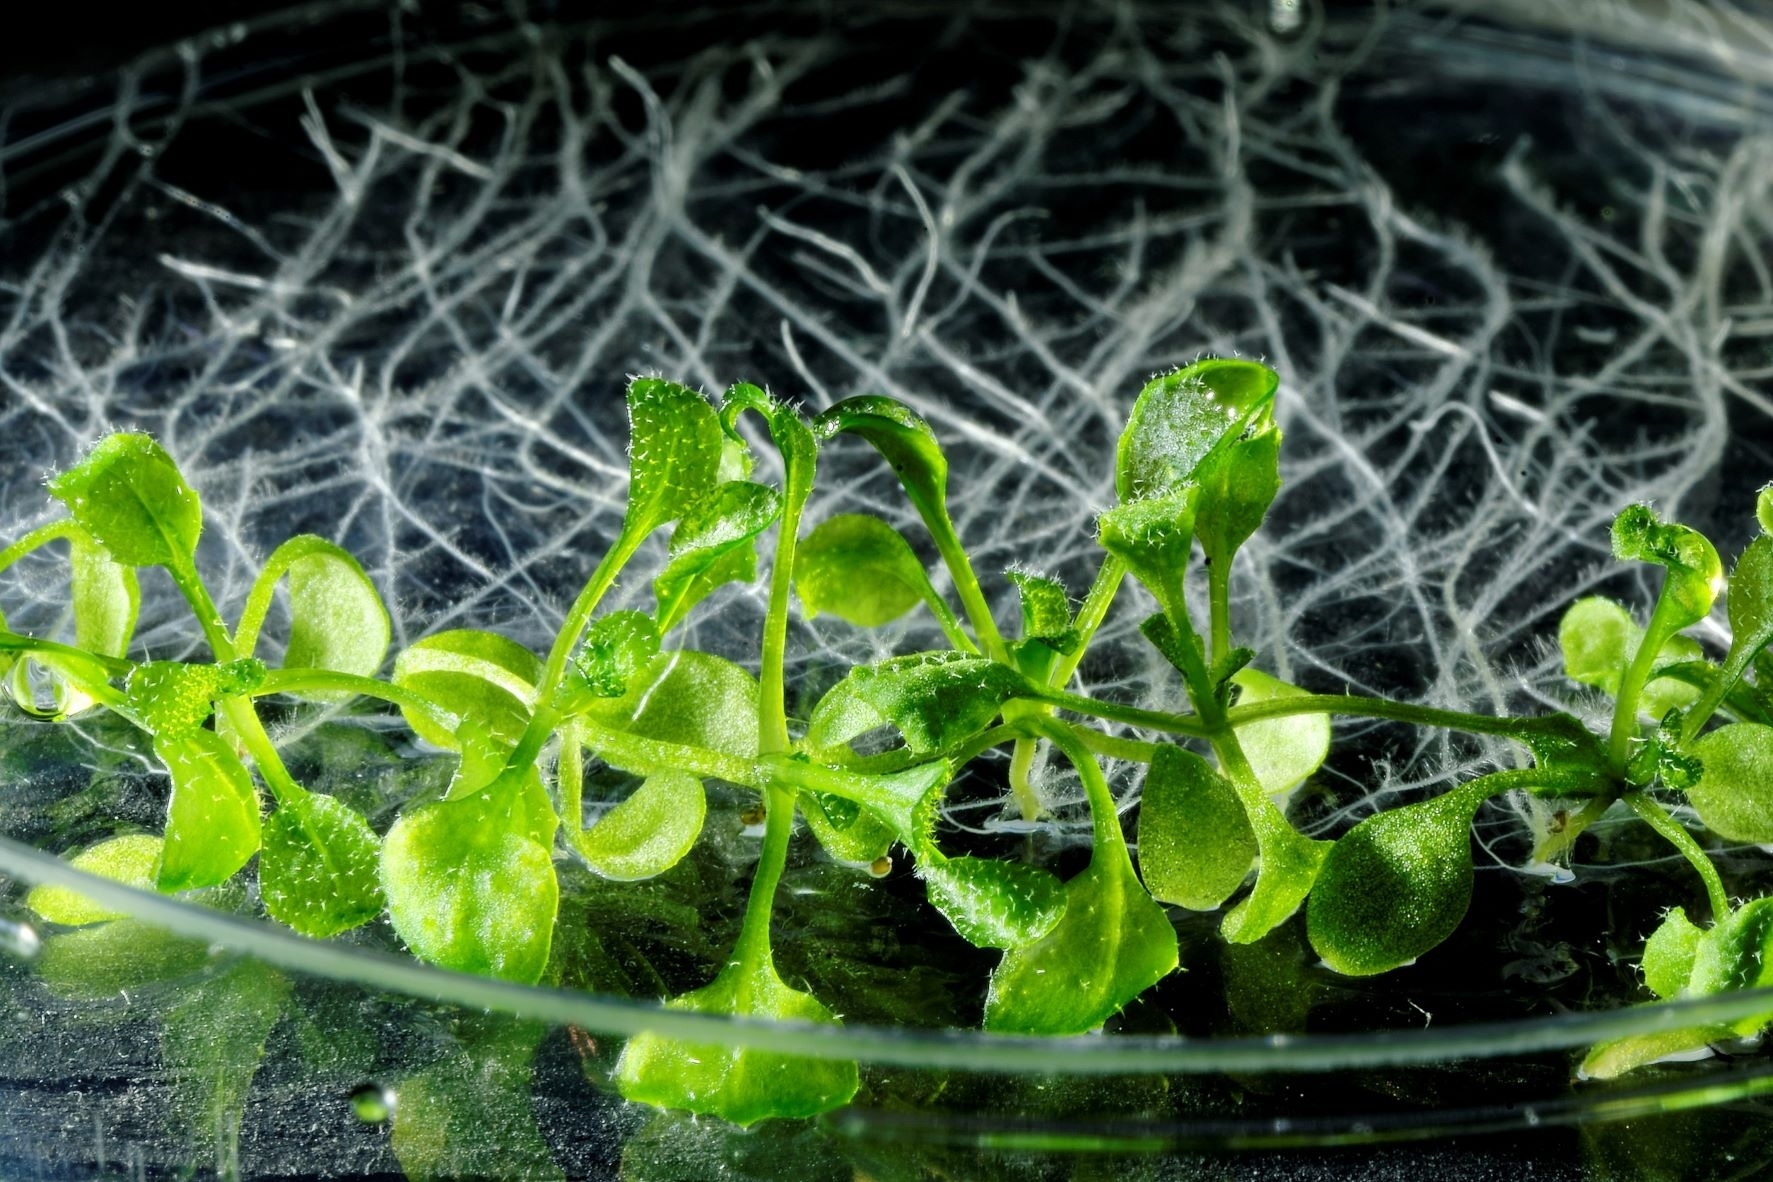 Augalai vengia pavojingų mutacijų